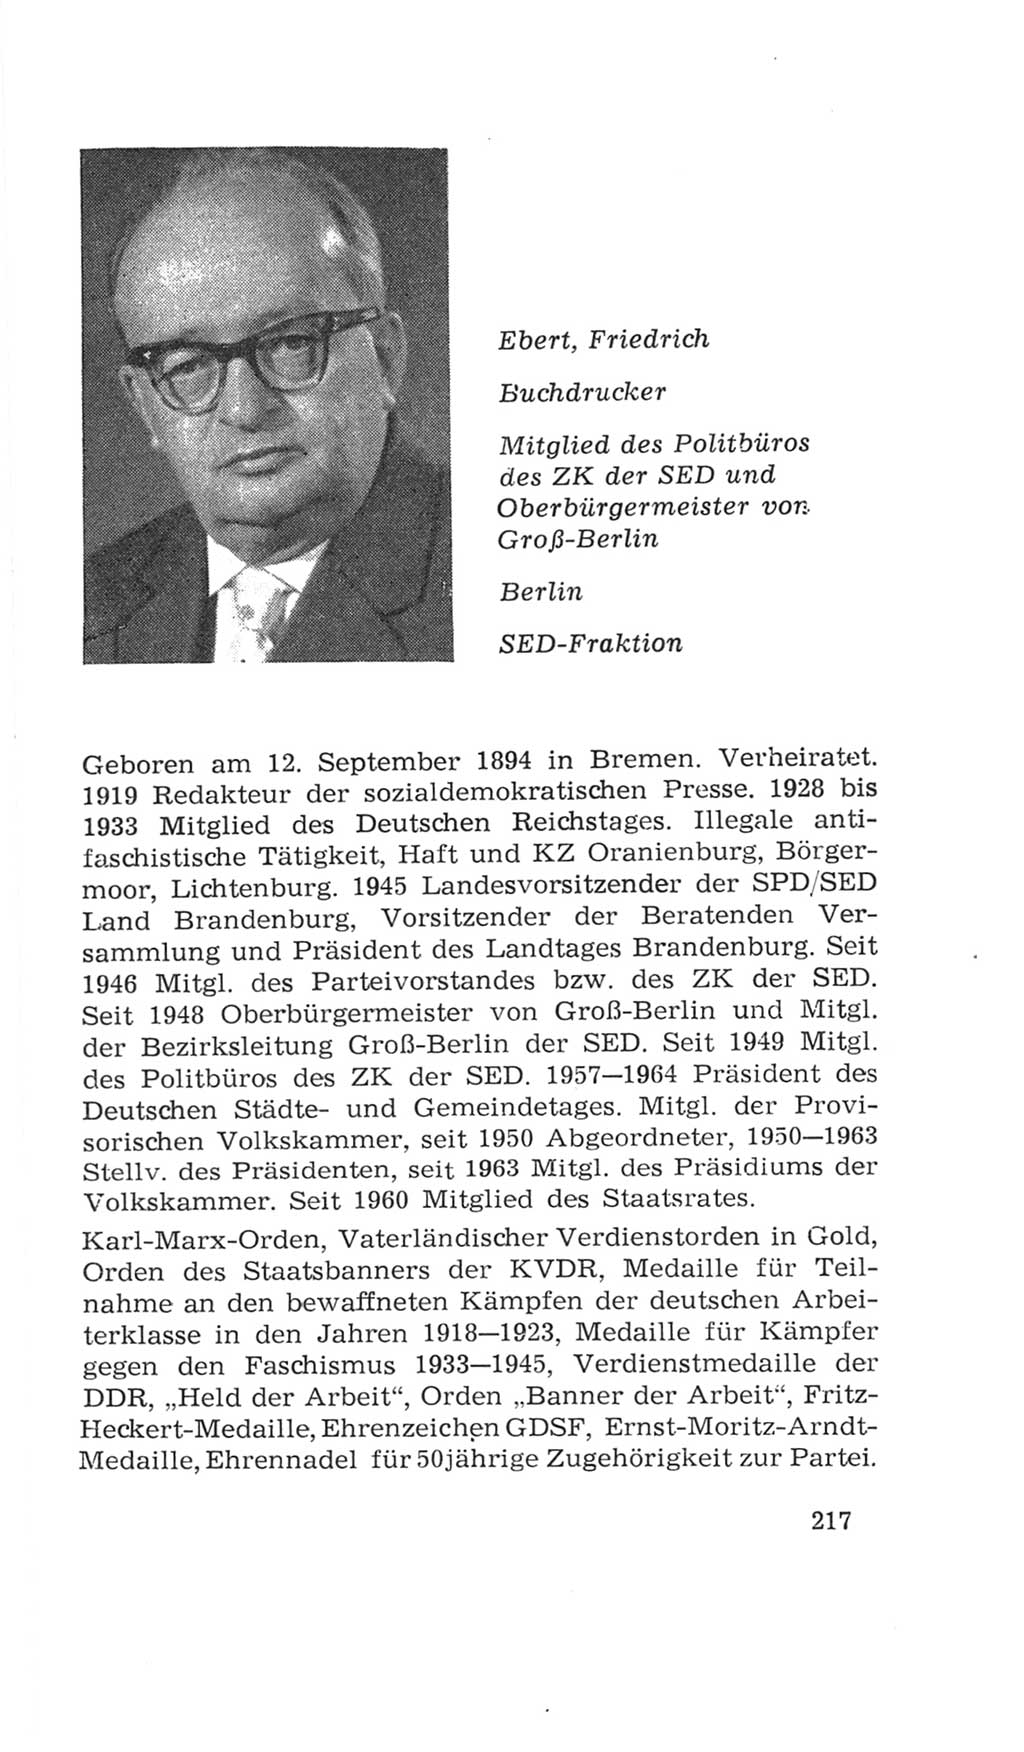 Volkskammer (VK) der Deutschen Demokratischen Republik (DDR), 4. Wahlperiode 1963-1967, Seite 217 (VK. DDR 4. WP. 1963-1967, S. 217)